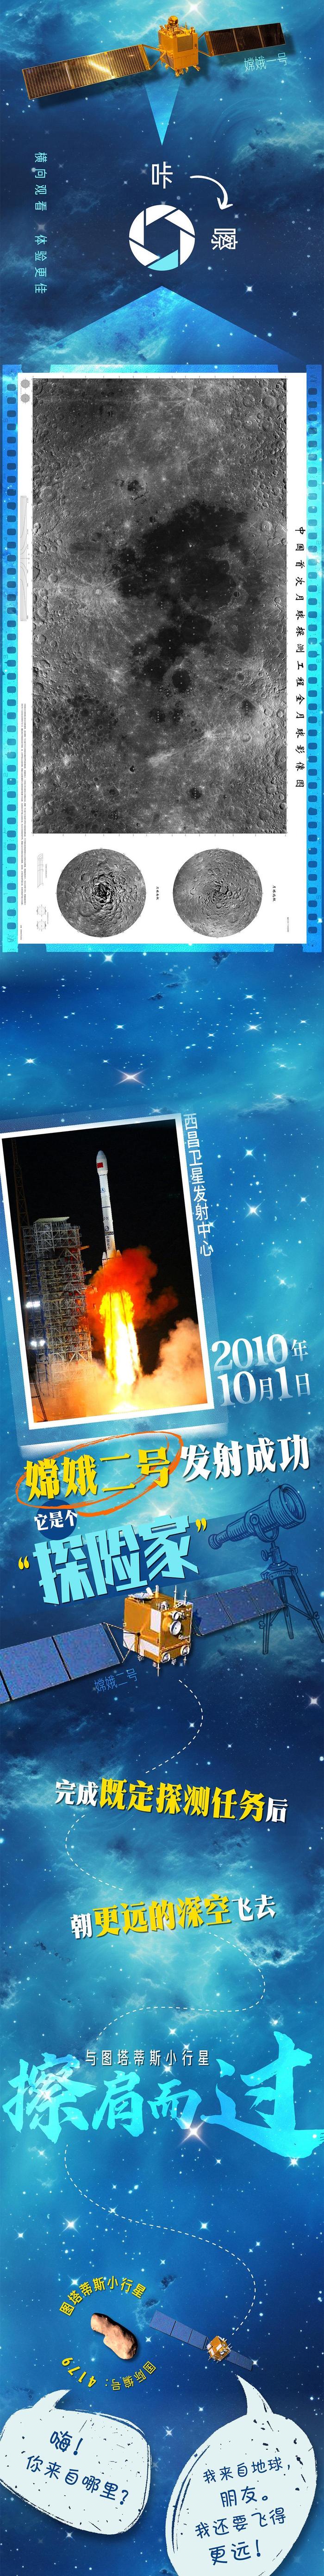 中国航天日丨创意长图：“嫦娥”揽月记